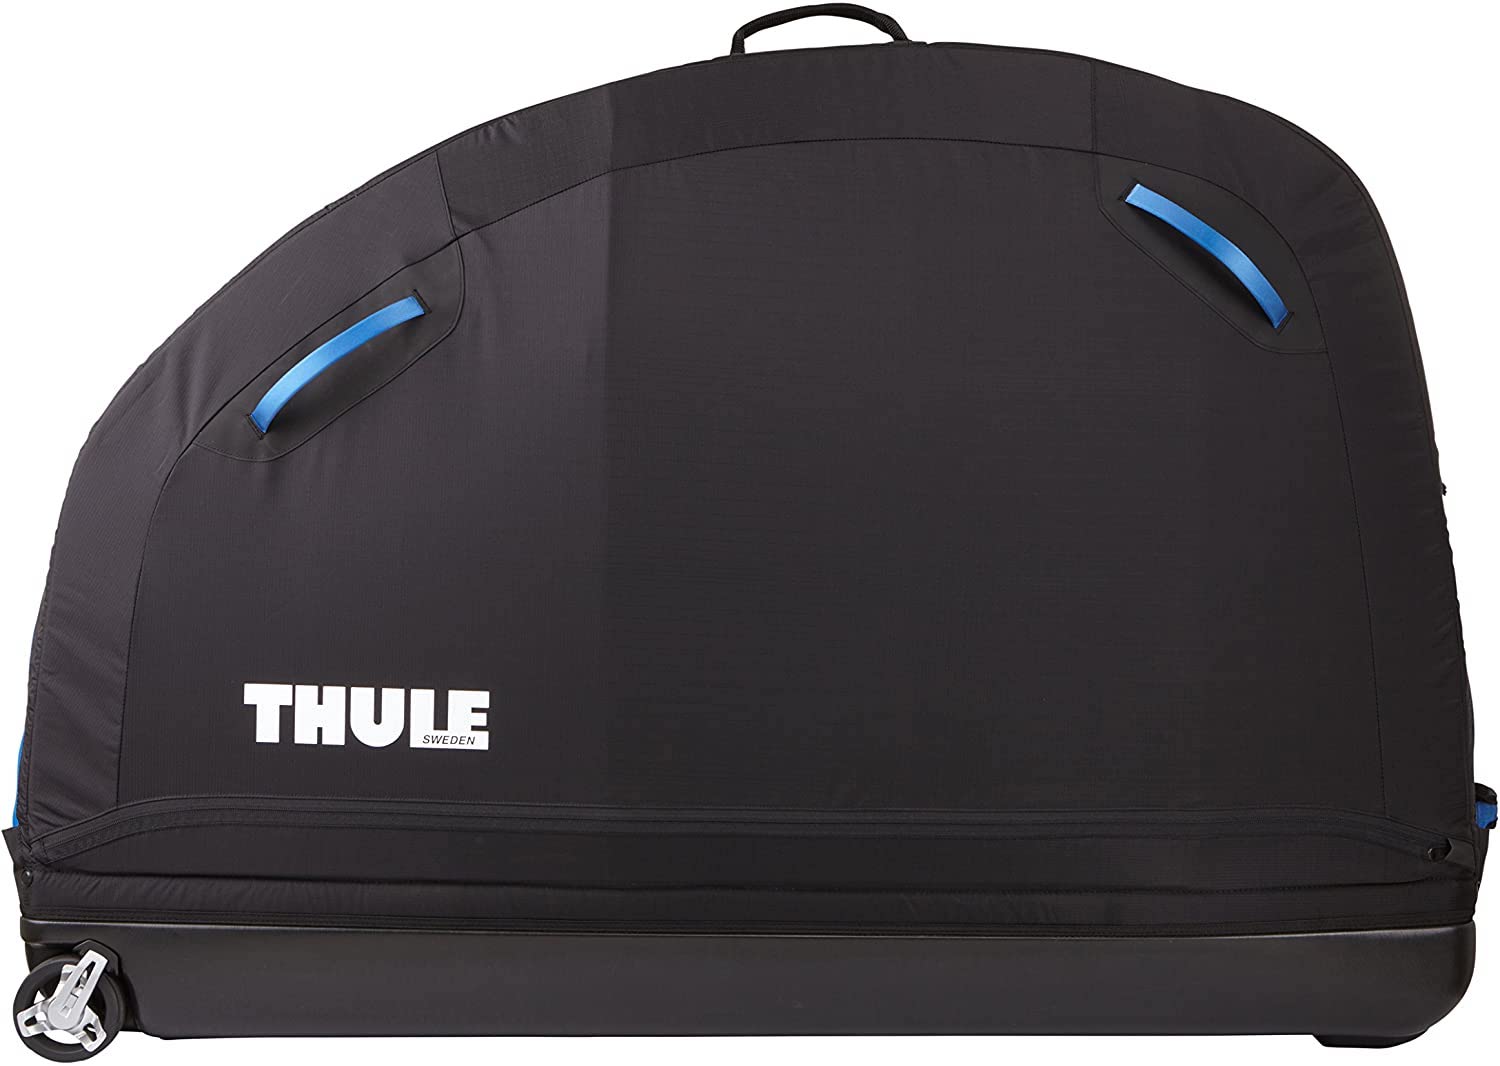 Thule bike bag